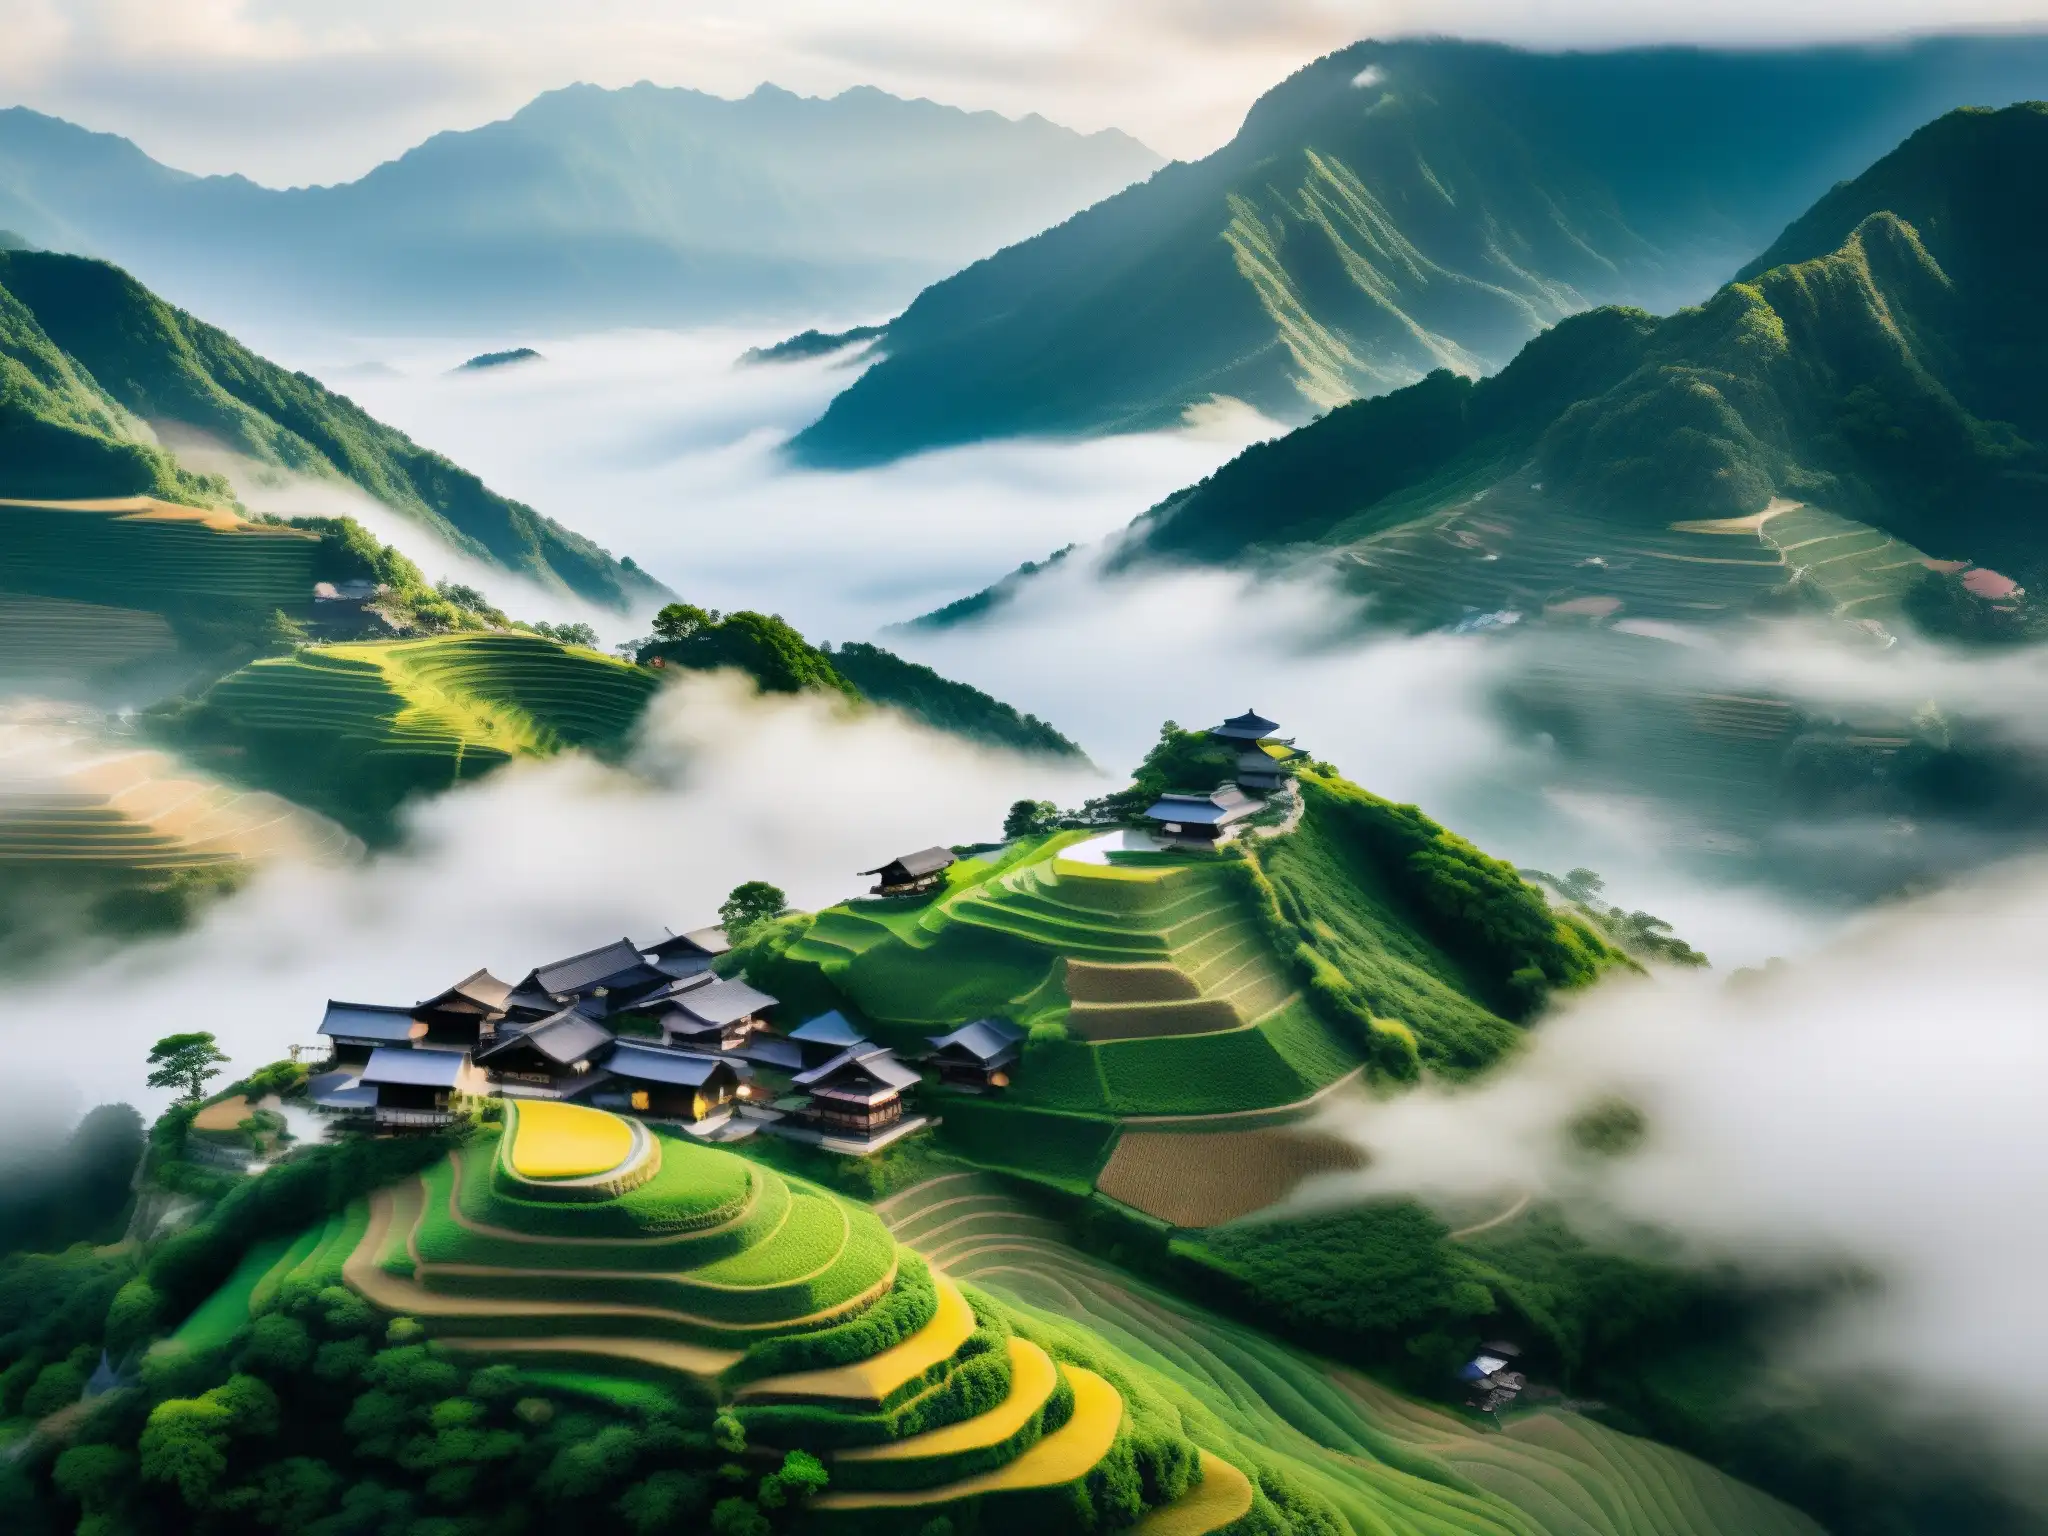 Un paisaje montañoso cubierto de neblina, con un pueblo japonés aislado entre las cimas